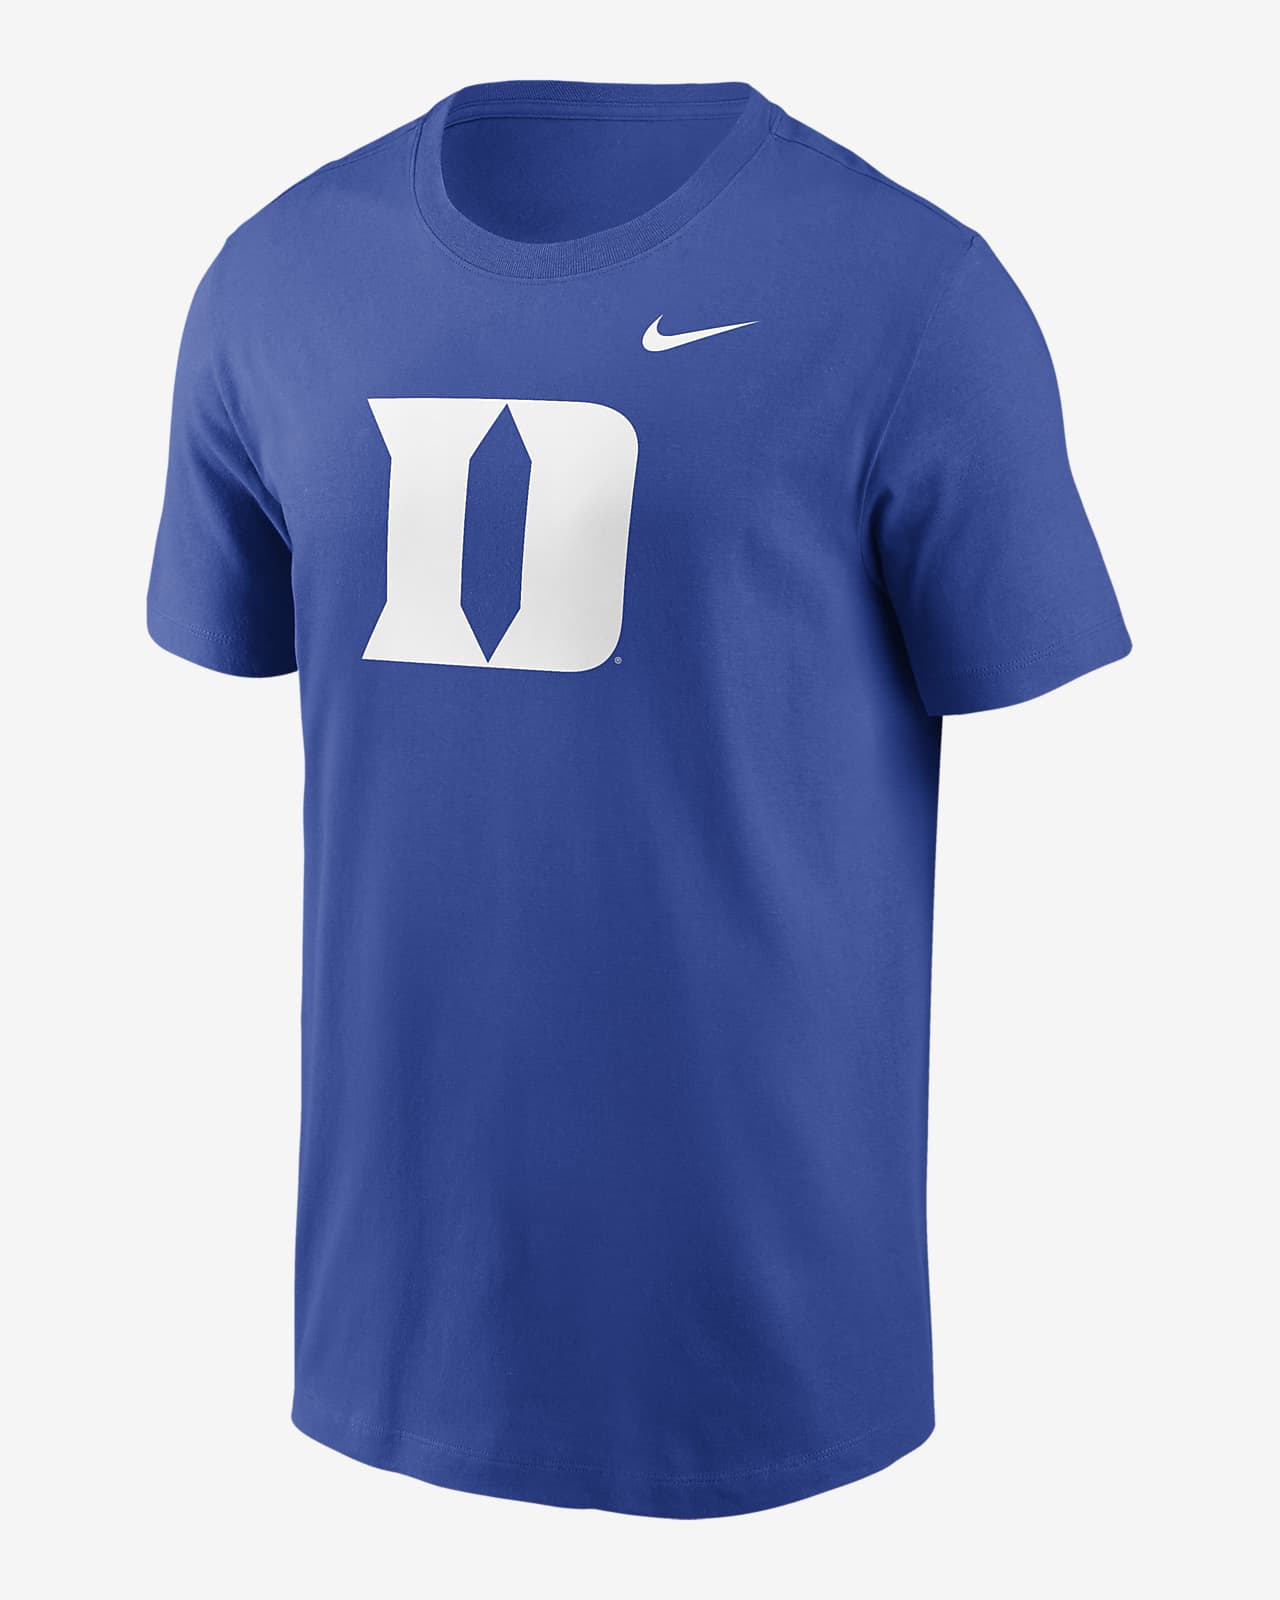 Duke Blue Devils Primetime Evergreen Logo Men's Nike College T-Shirt